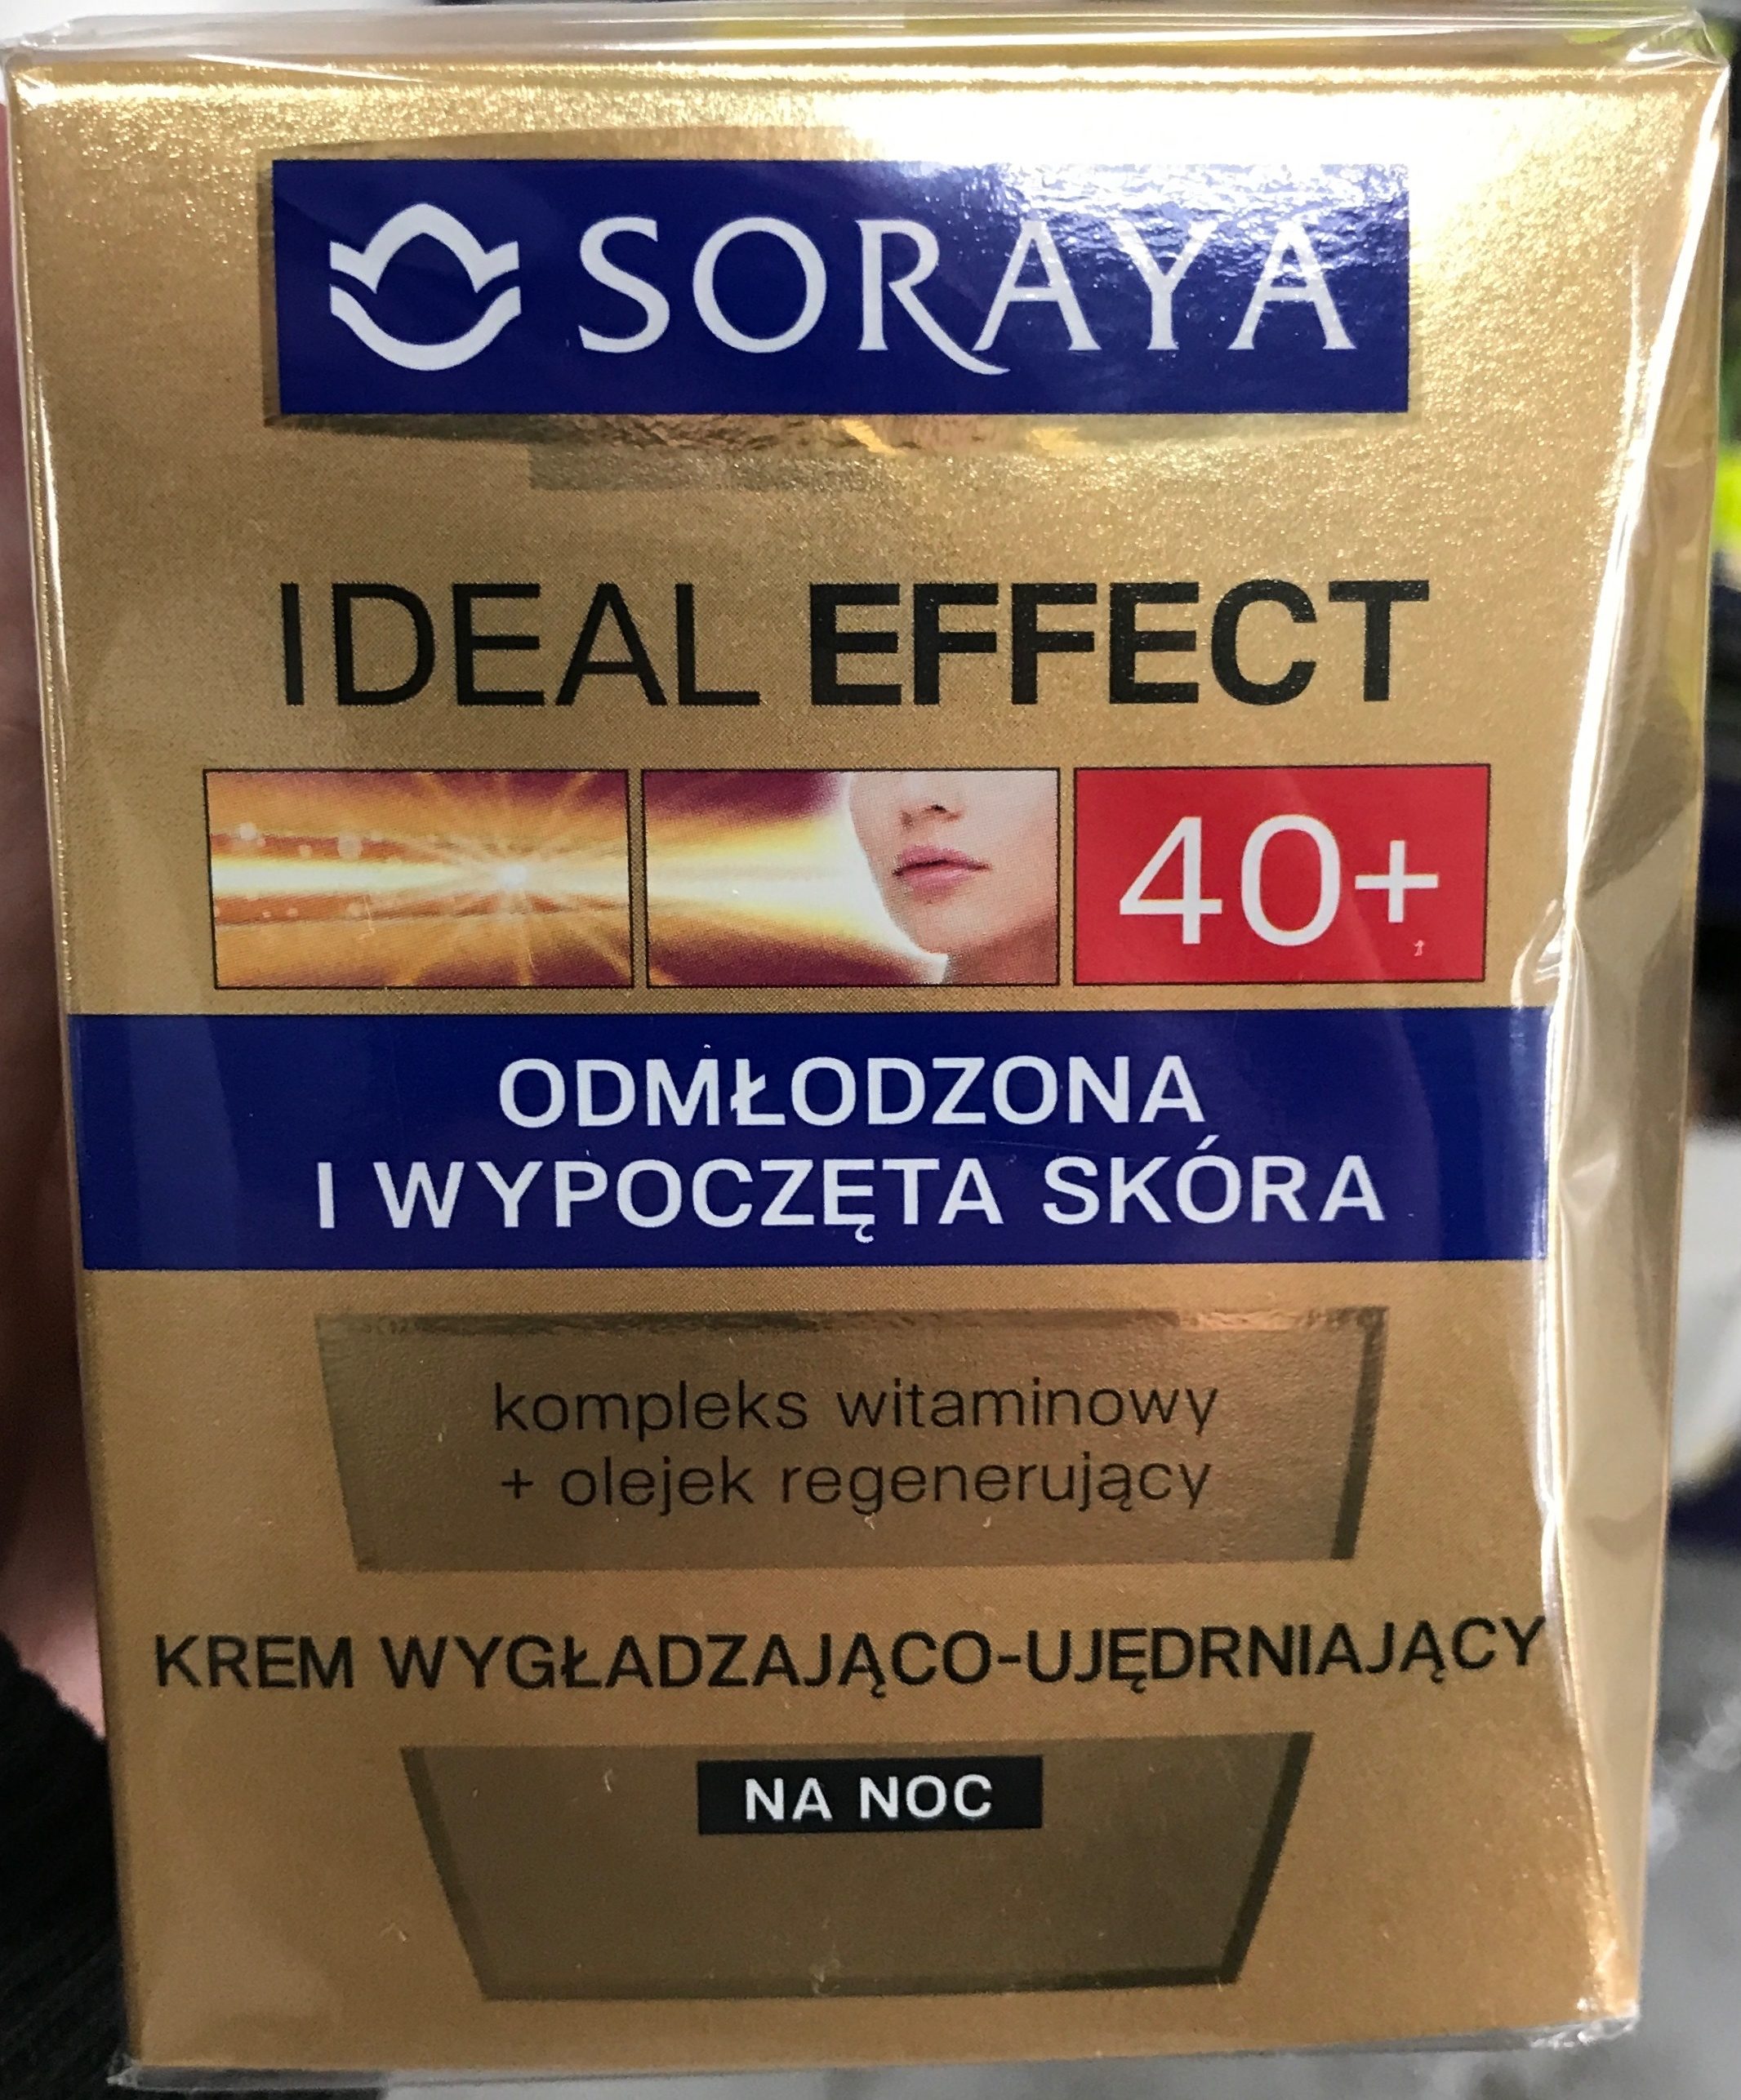 Ideal Effect 40+ Krem wygładzająco-ujędrniający - Produto - pl